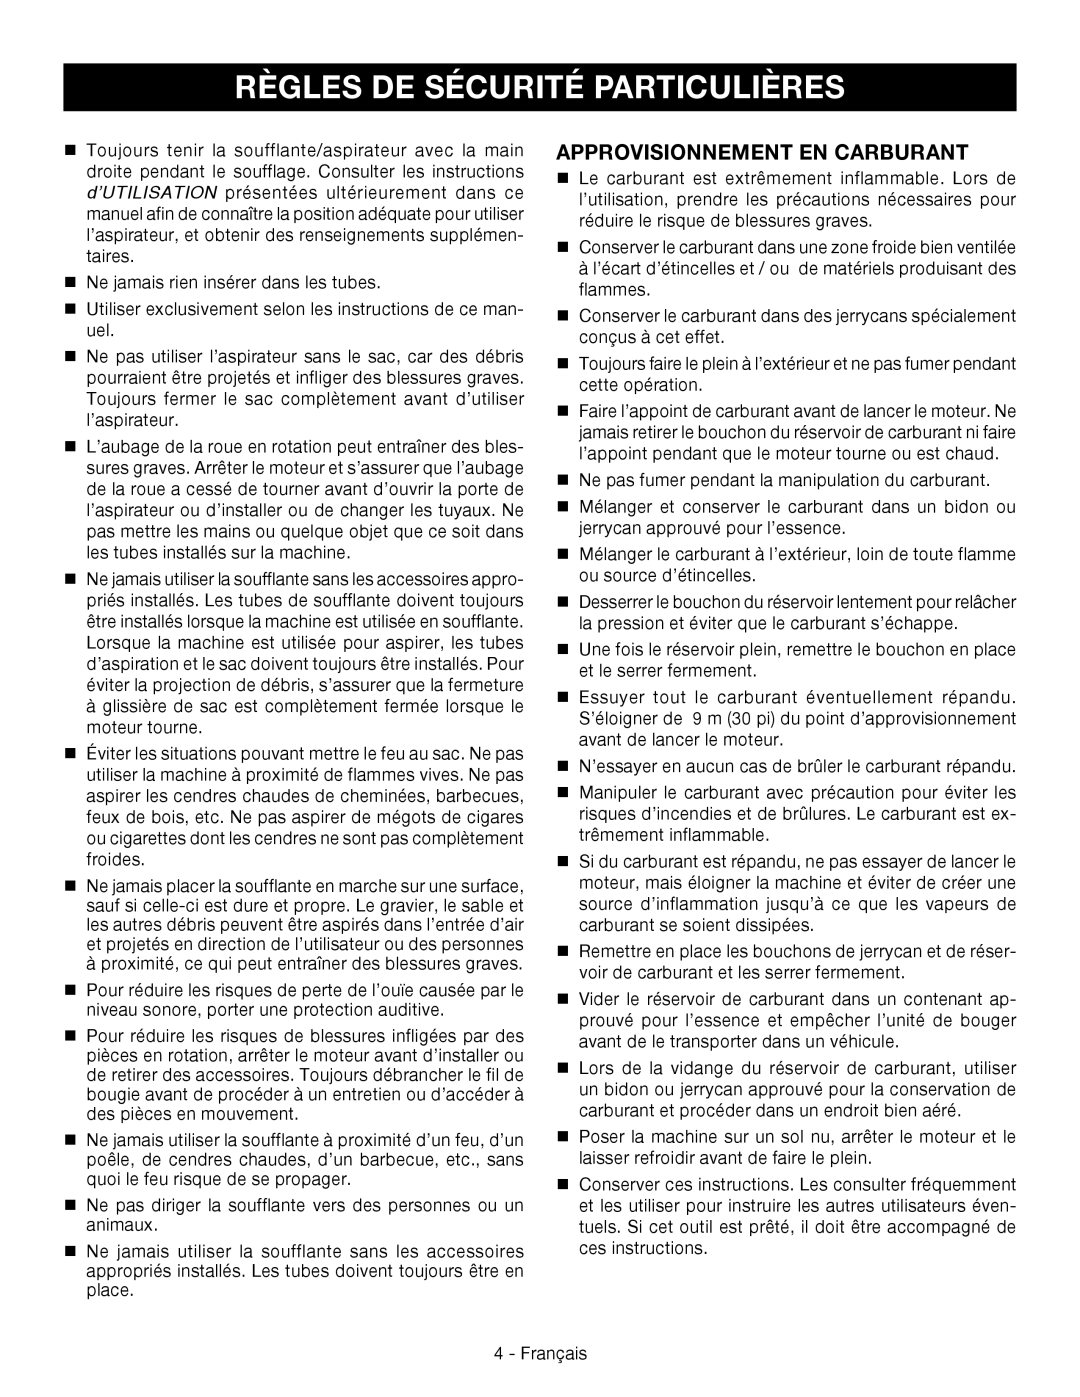 Ryobi RY09051 manuel dutilisation Règles De Sécurité Particulières, Approvisionnement En Carburant 